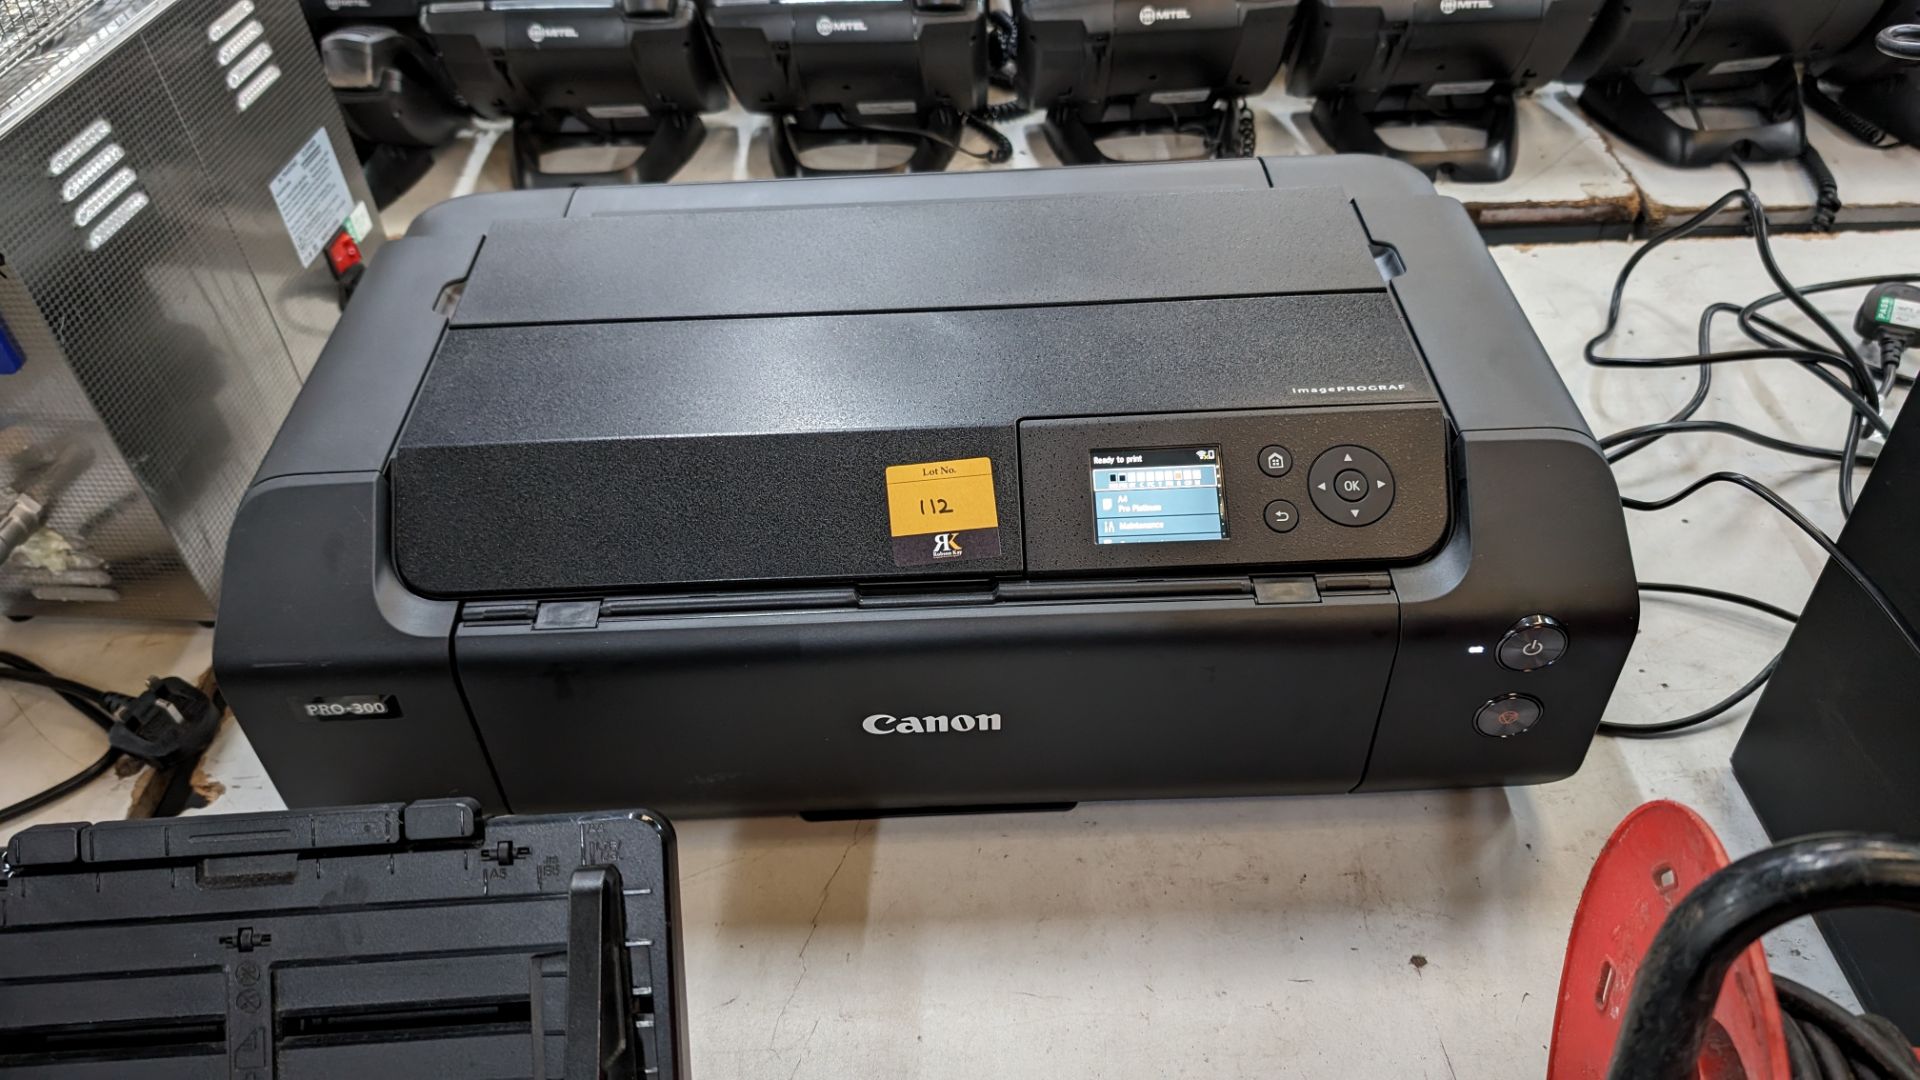 Canon Pro-300 ImagePROGRAF A3 printer